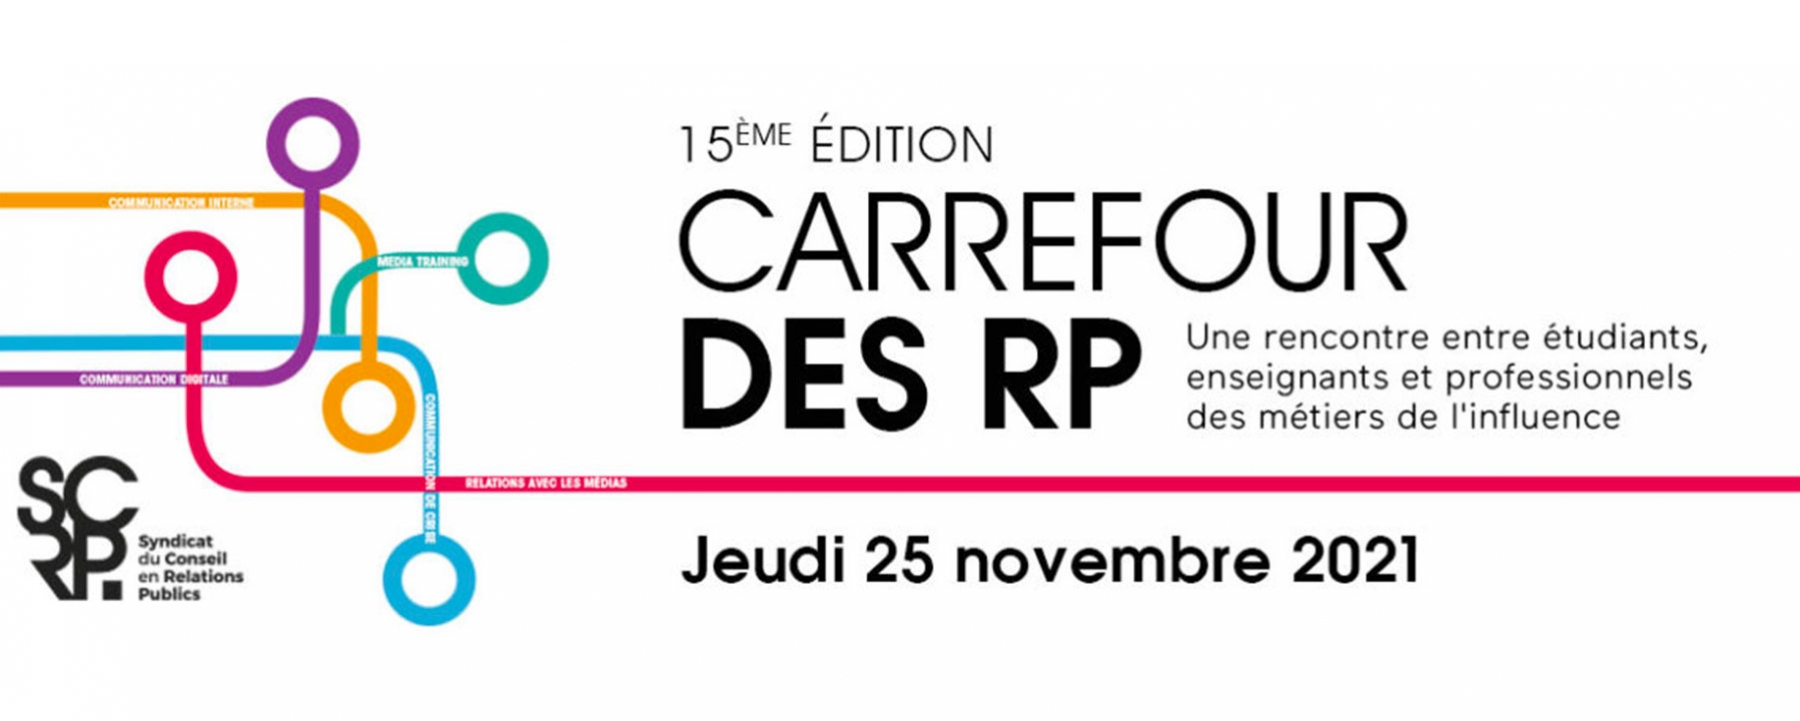 15ème édition du Carrefour des RP